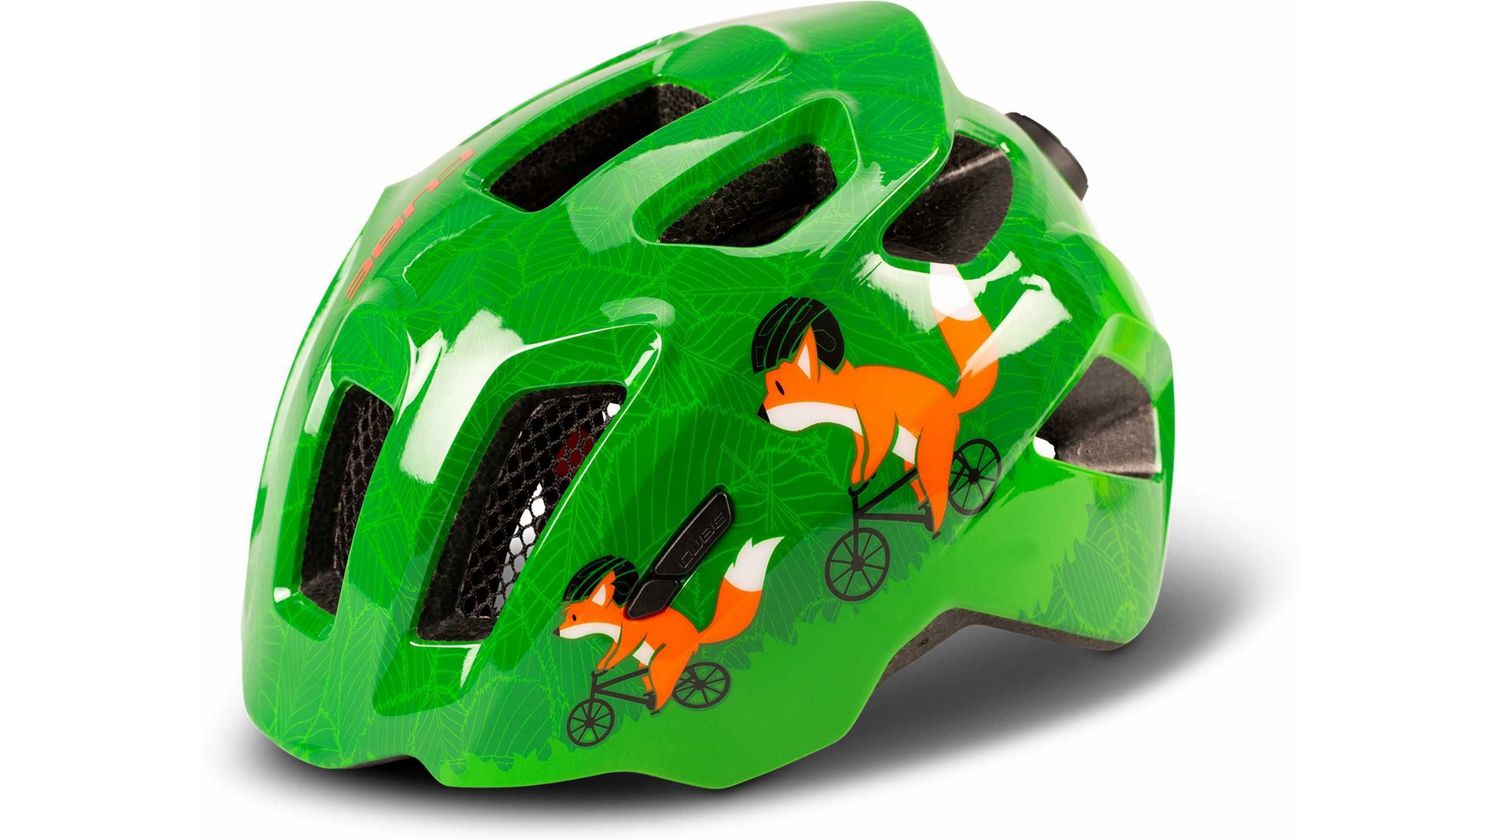 Cube Helm FINK green